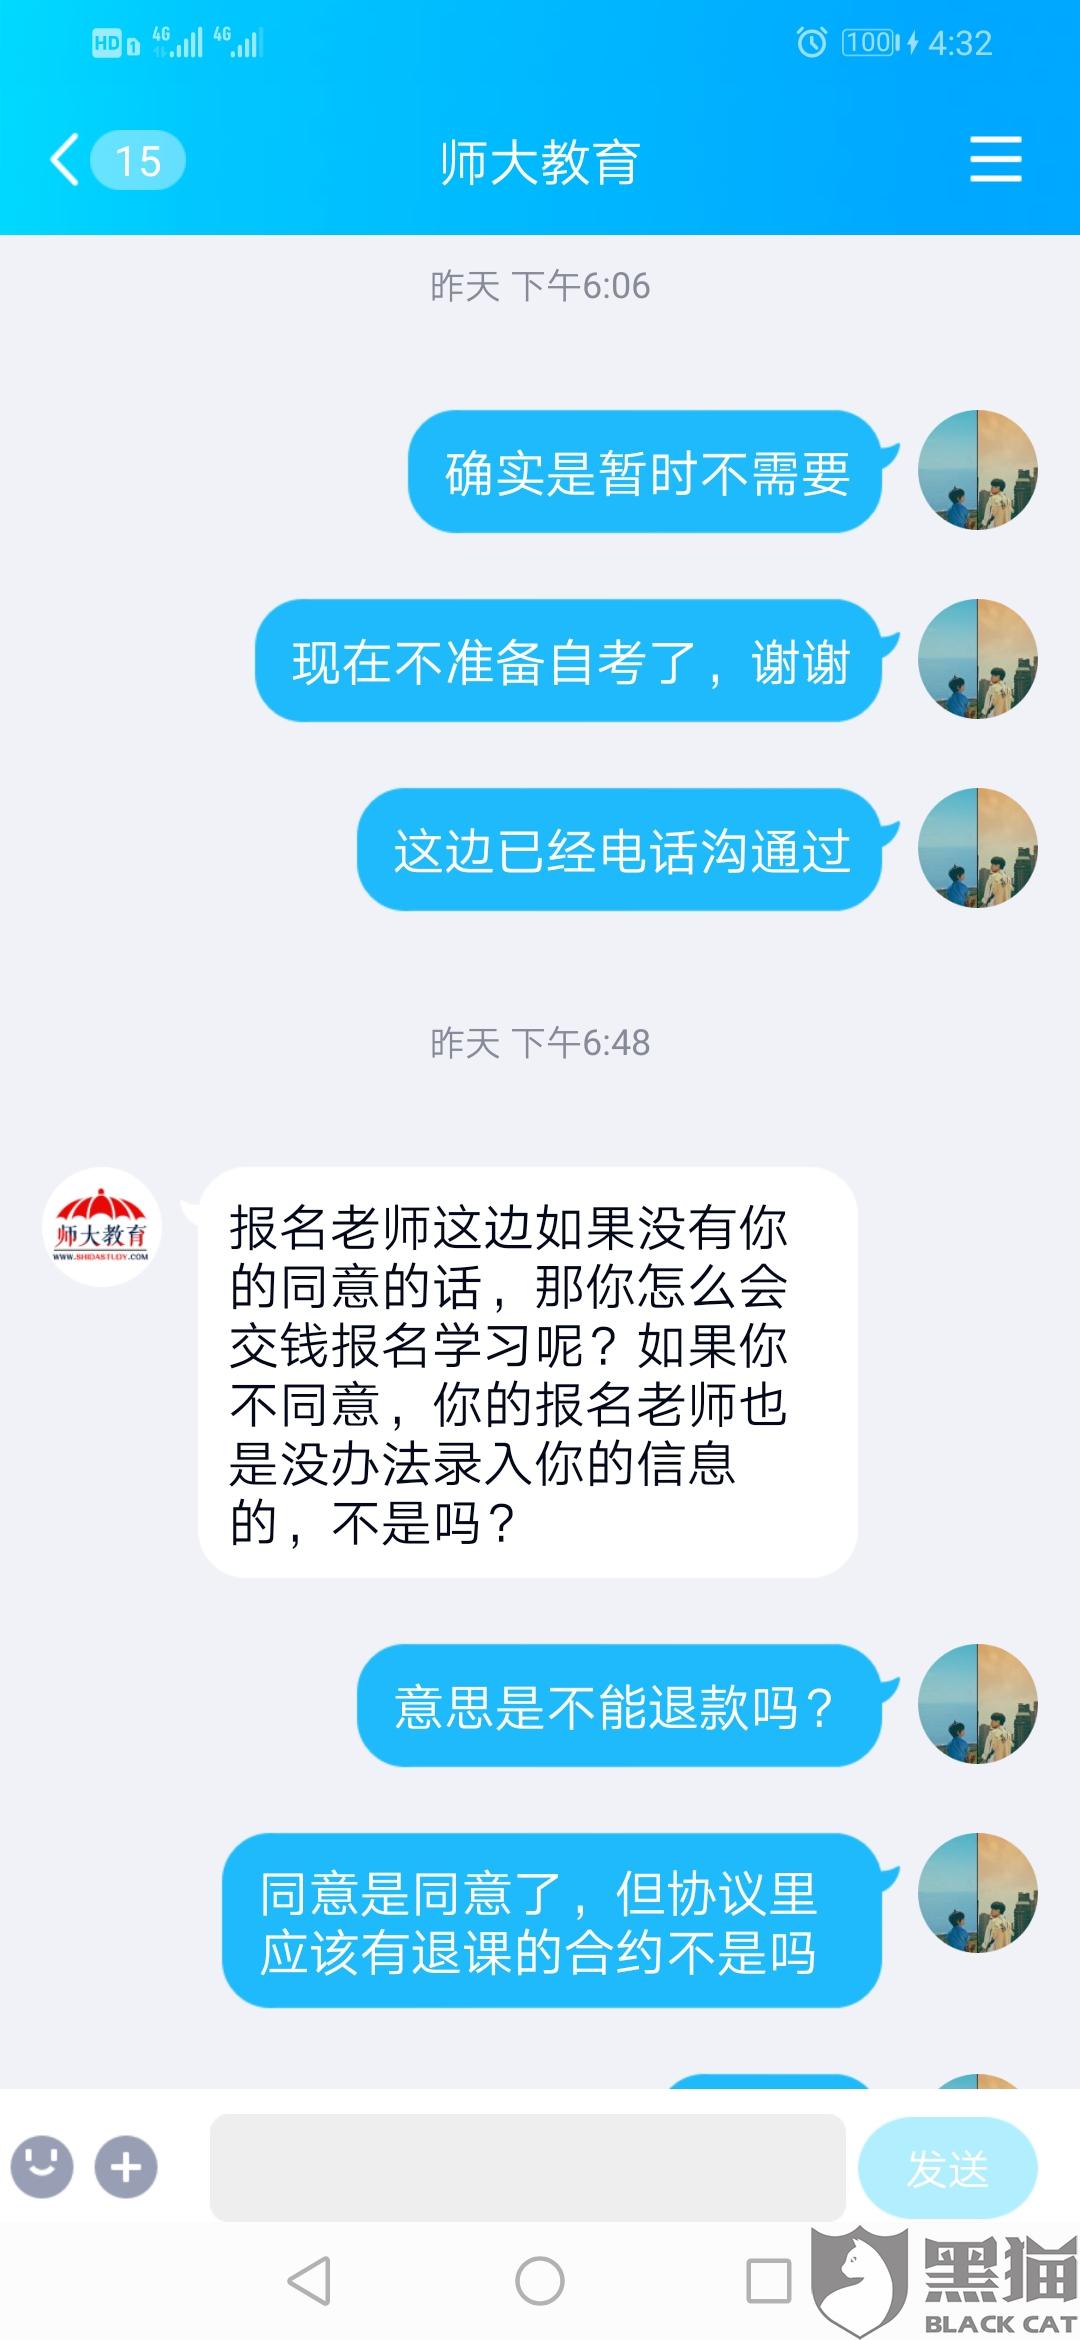 黑猫投诉：广州师德皓大教育科技有限公司未按承诺退款，引导有钱花借贷。（已解决）